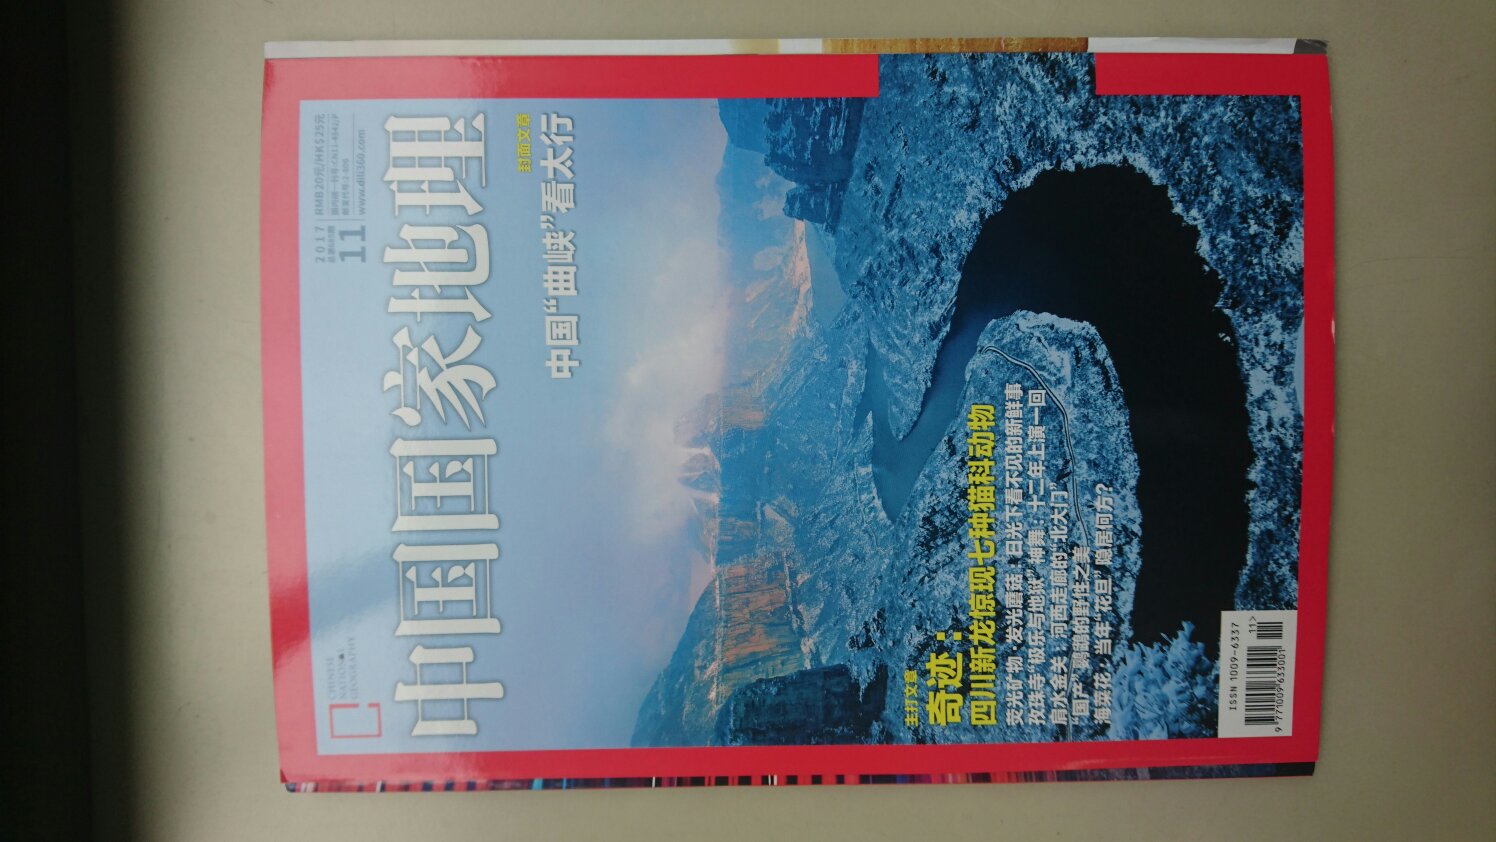 这期《中国国家地理》杂志中动物的美图还不少呢。